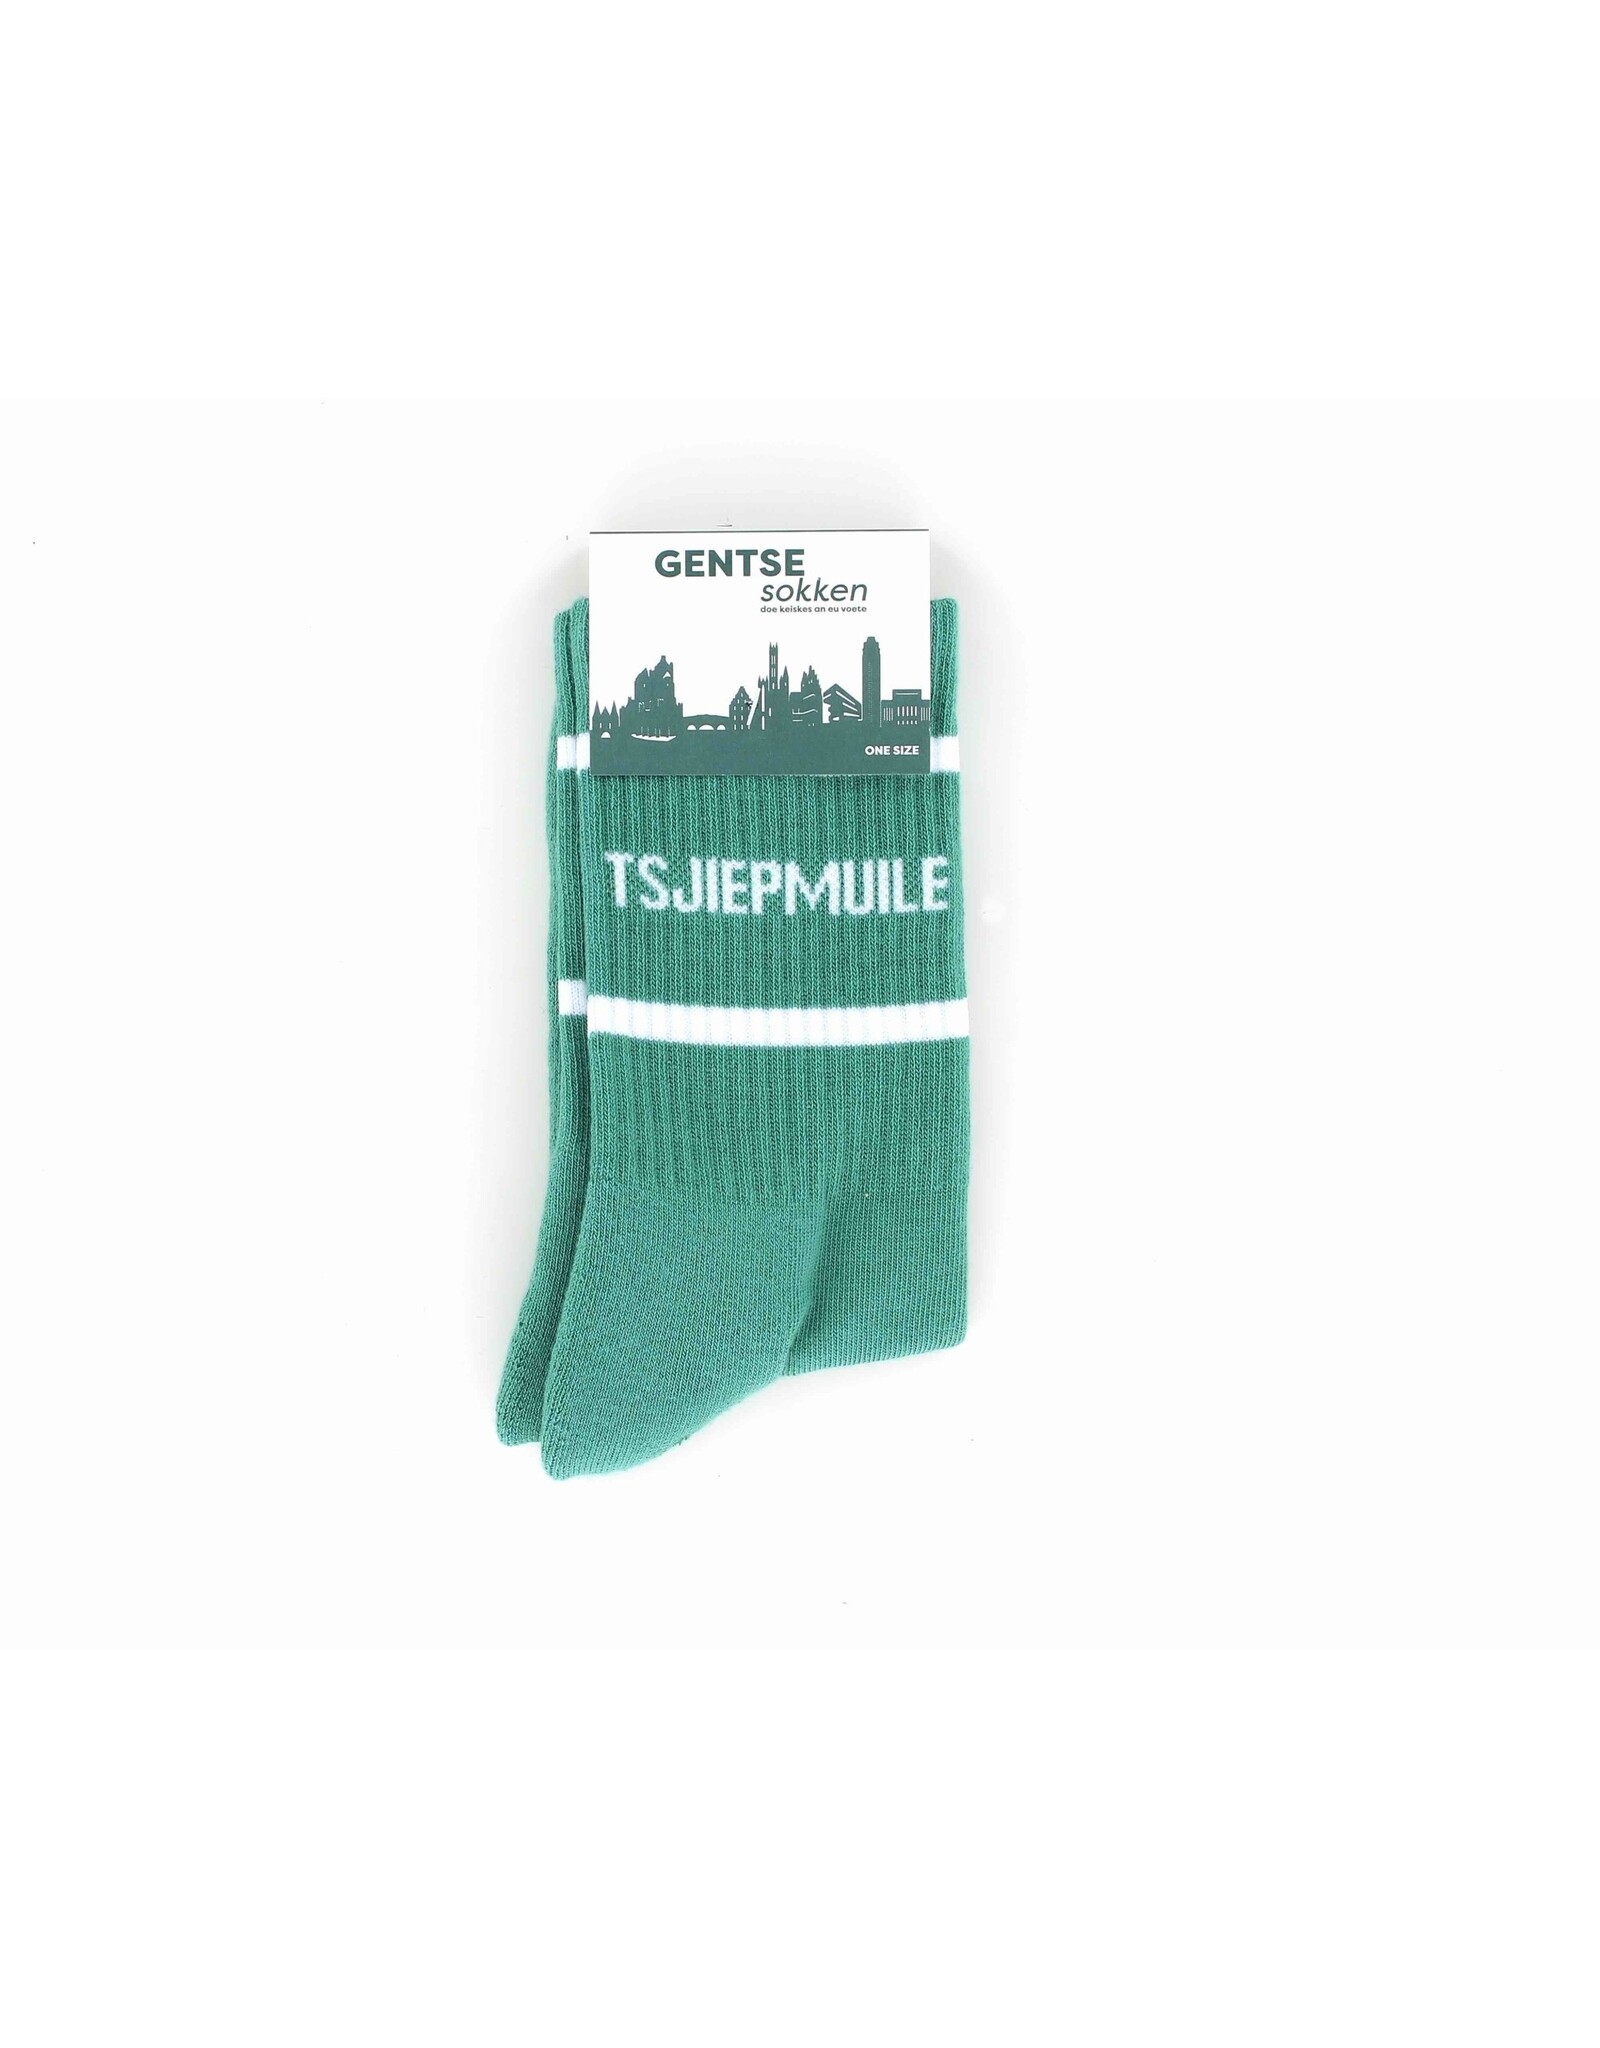 Gentse sokken Gentse sokken - Tsjiepmuile - Katoen - One size